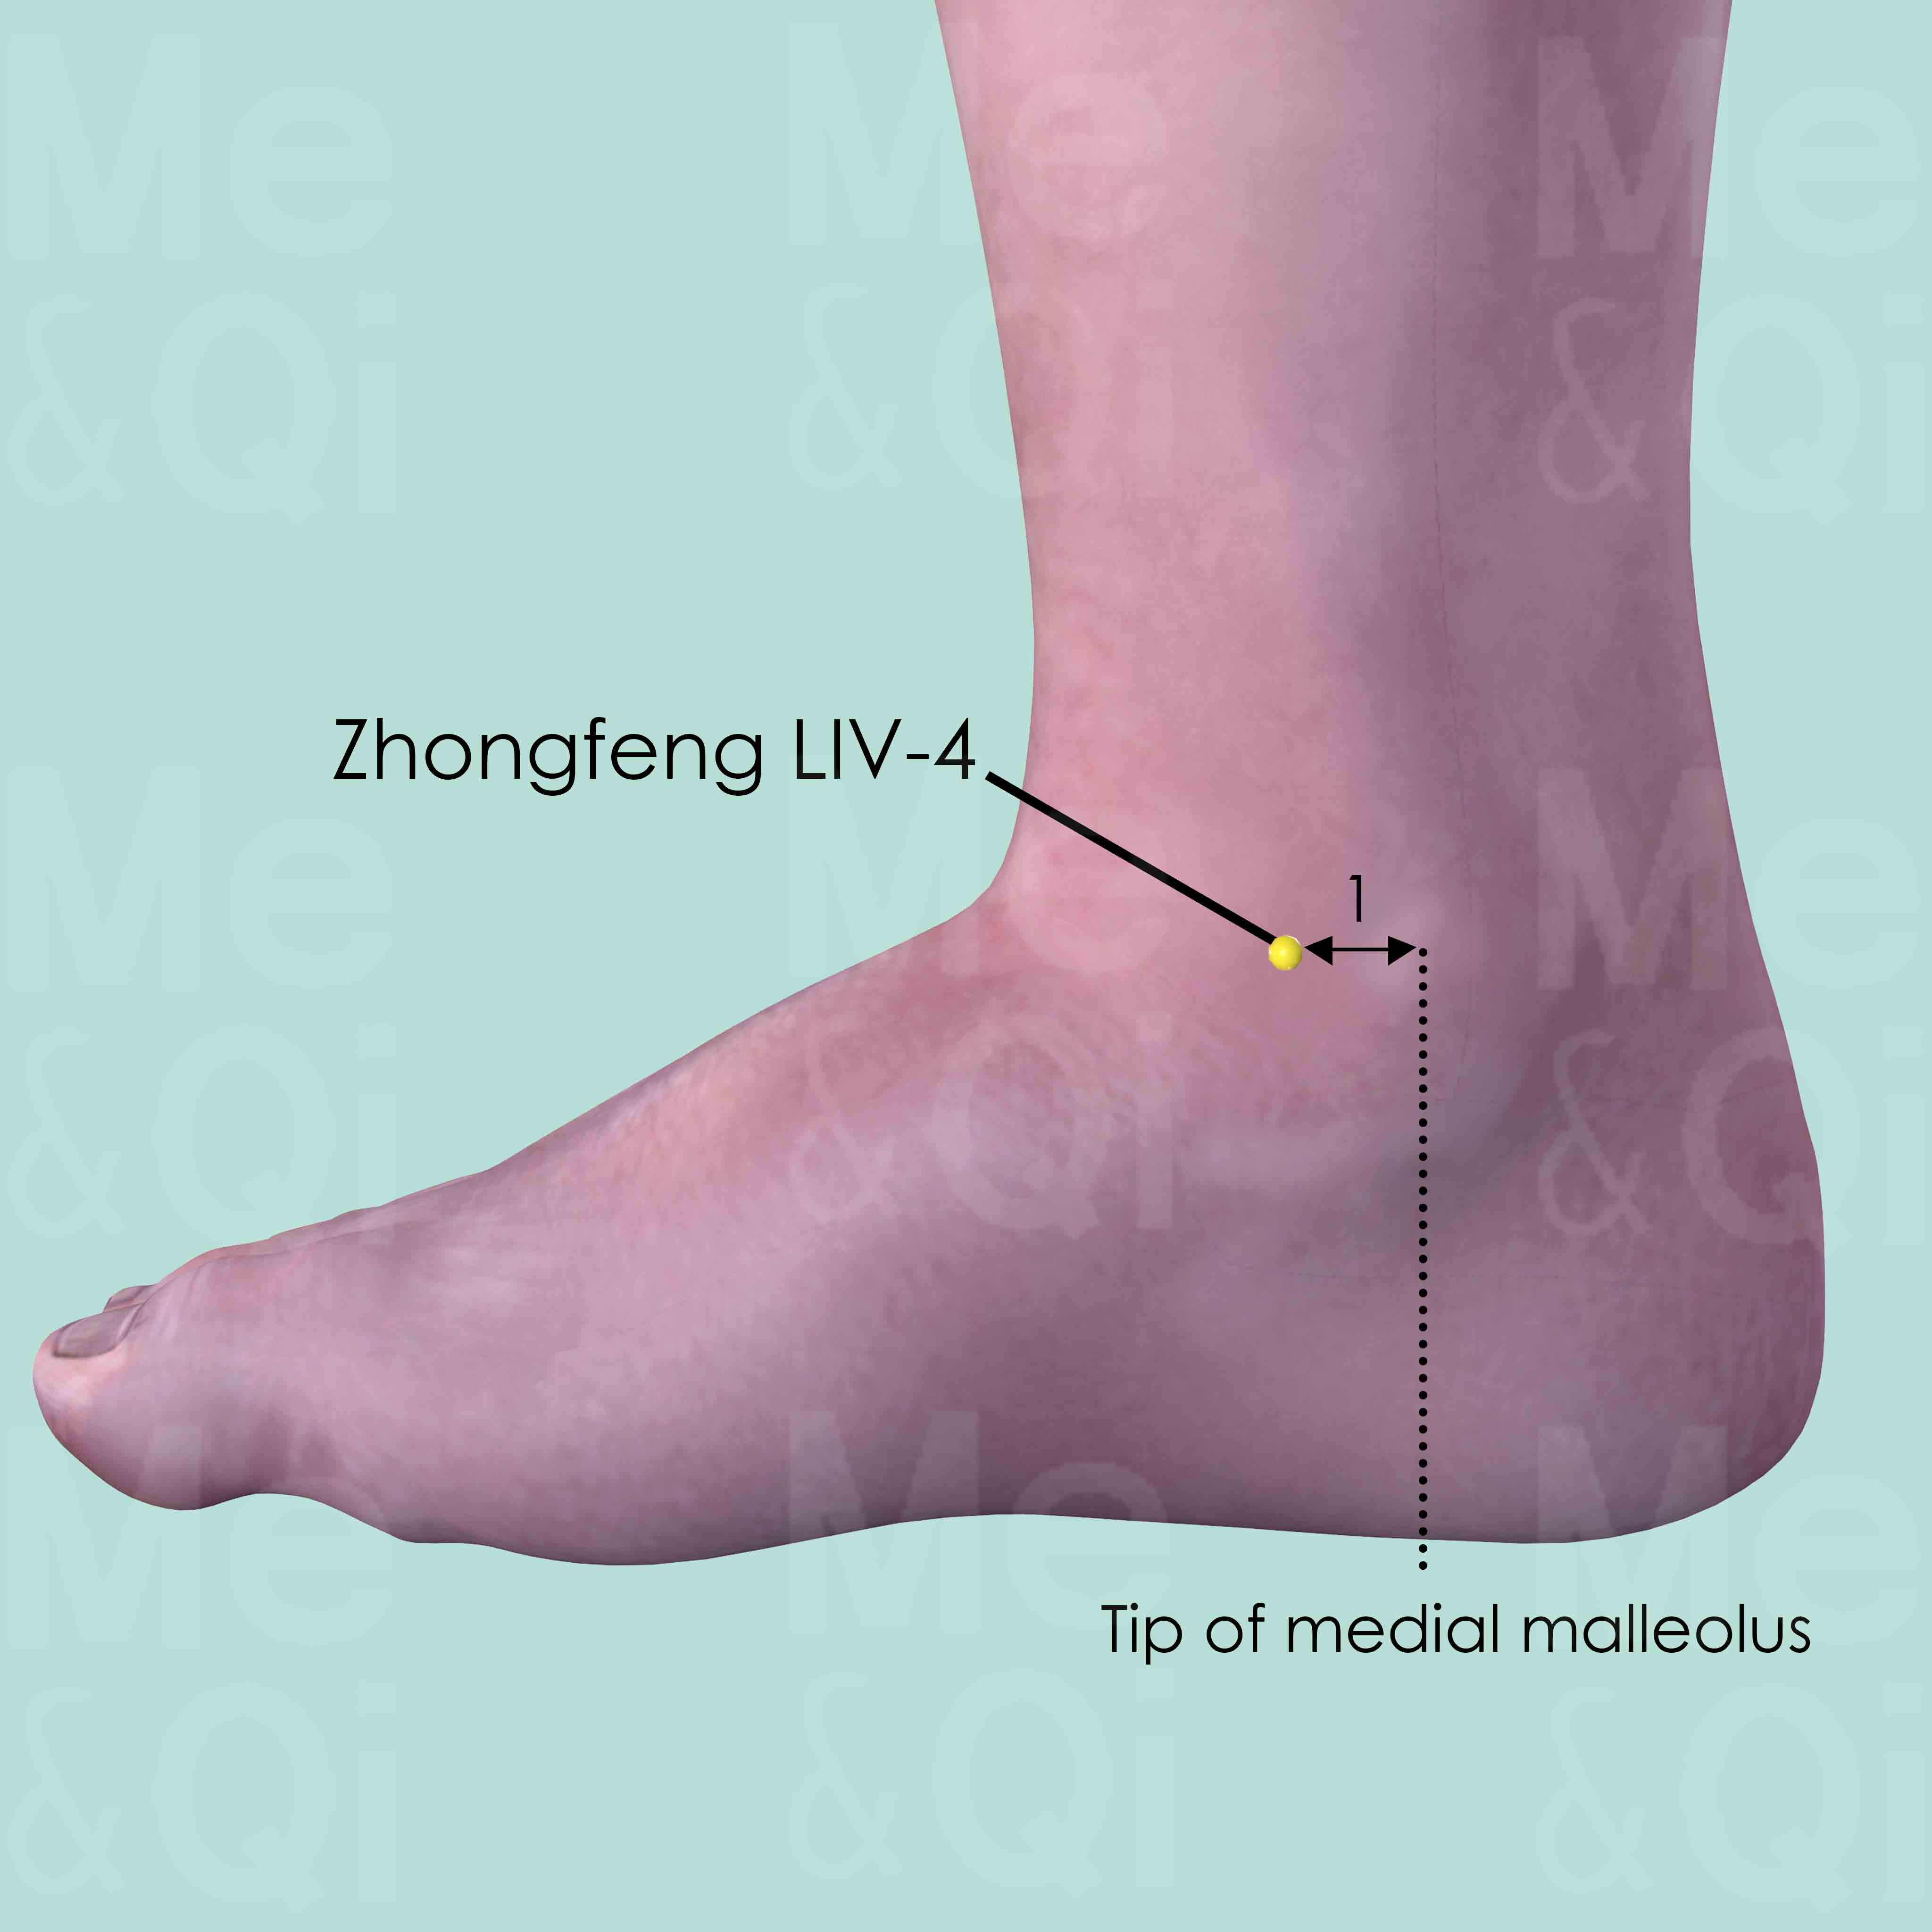 Zhongfeng LIV-4